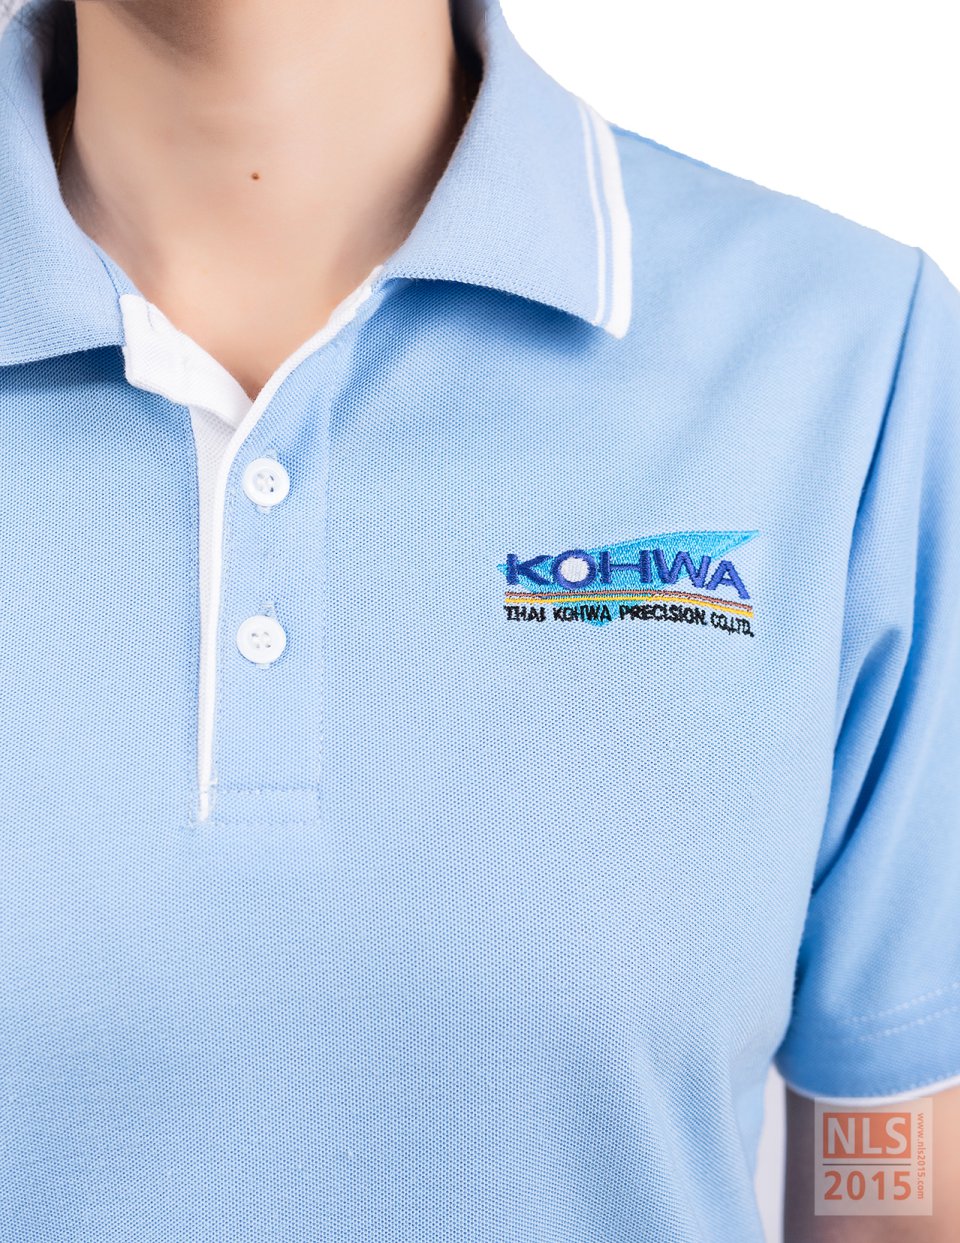 ตัวอย่างเสื้อโปโลพนักงานบริษัท KOHWA / นลินสิริ รับตัดเสื้อโปโล รับผลิตเสื้อโปโลพร้อมปักโลโก้รูปที่ 